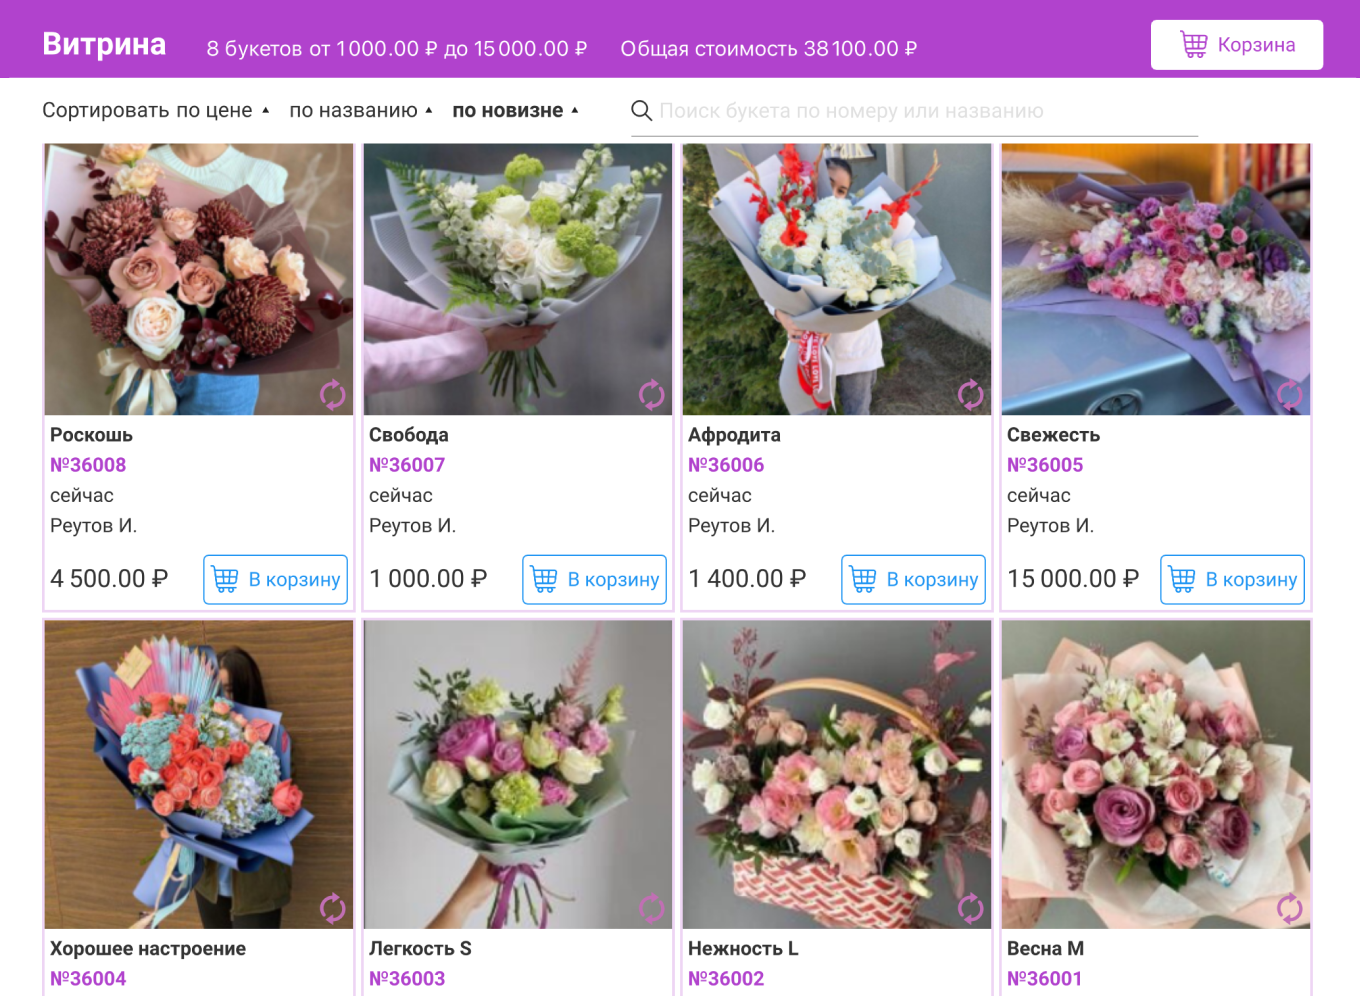 Как оформить цветочный интернет-магазин